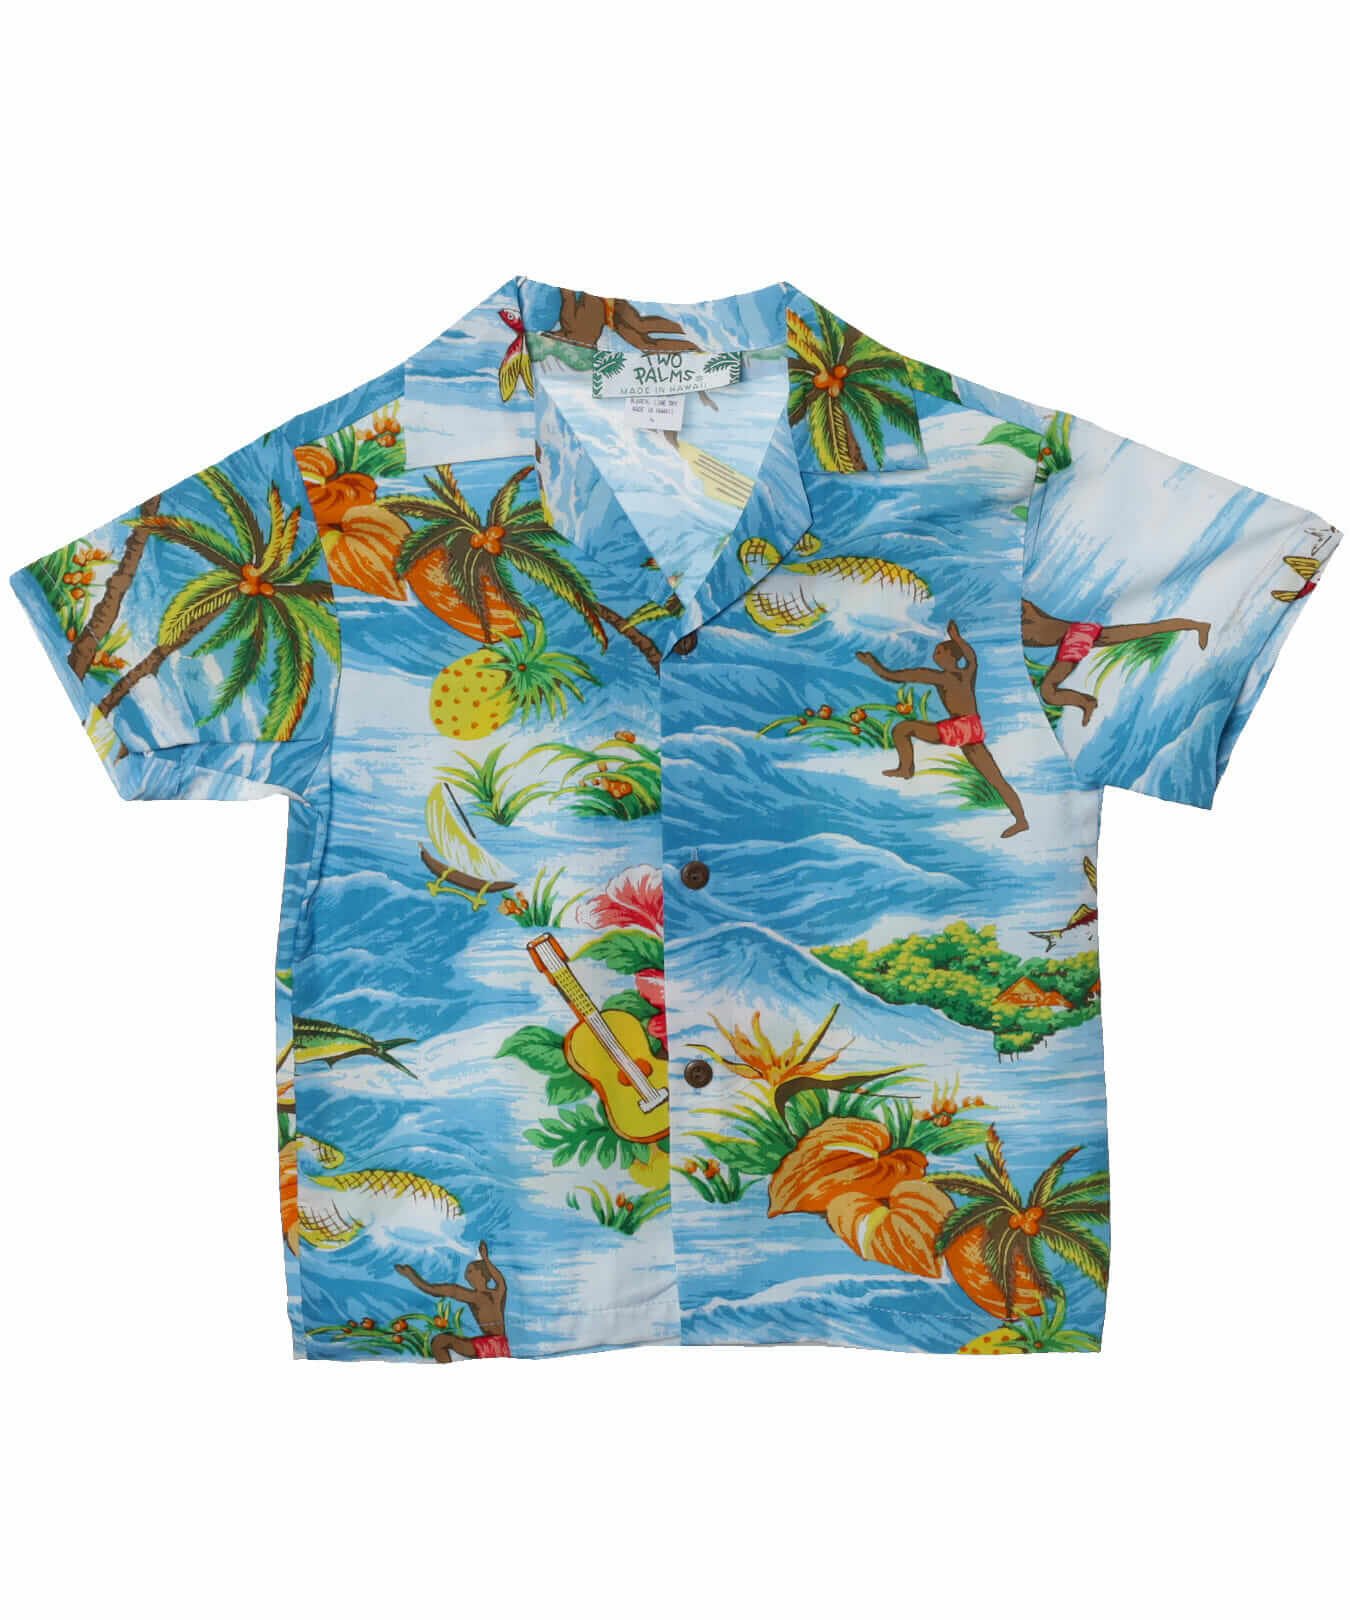 Orchid Boy's Aloha Shirt Light Blue